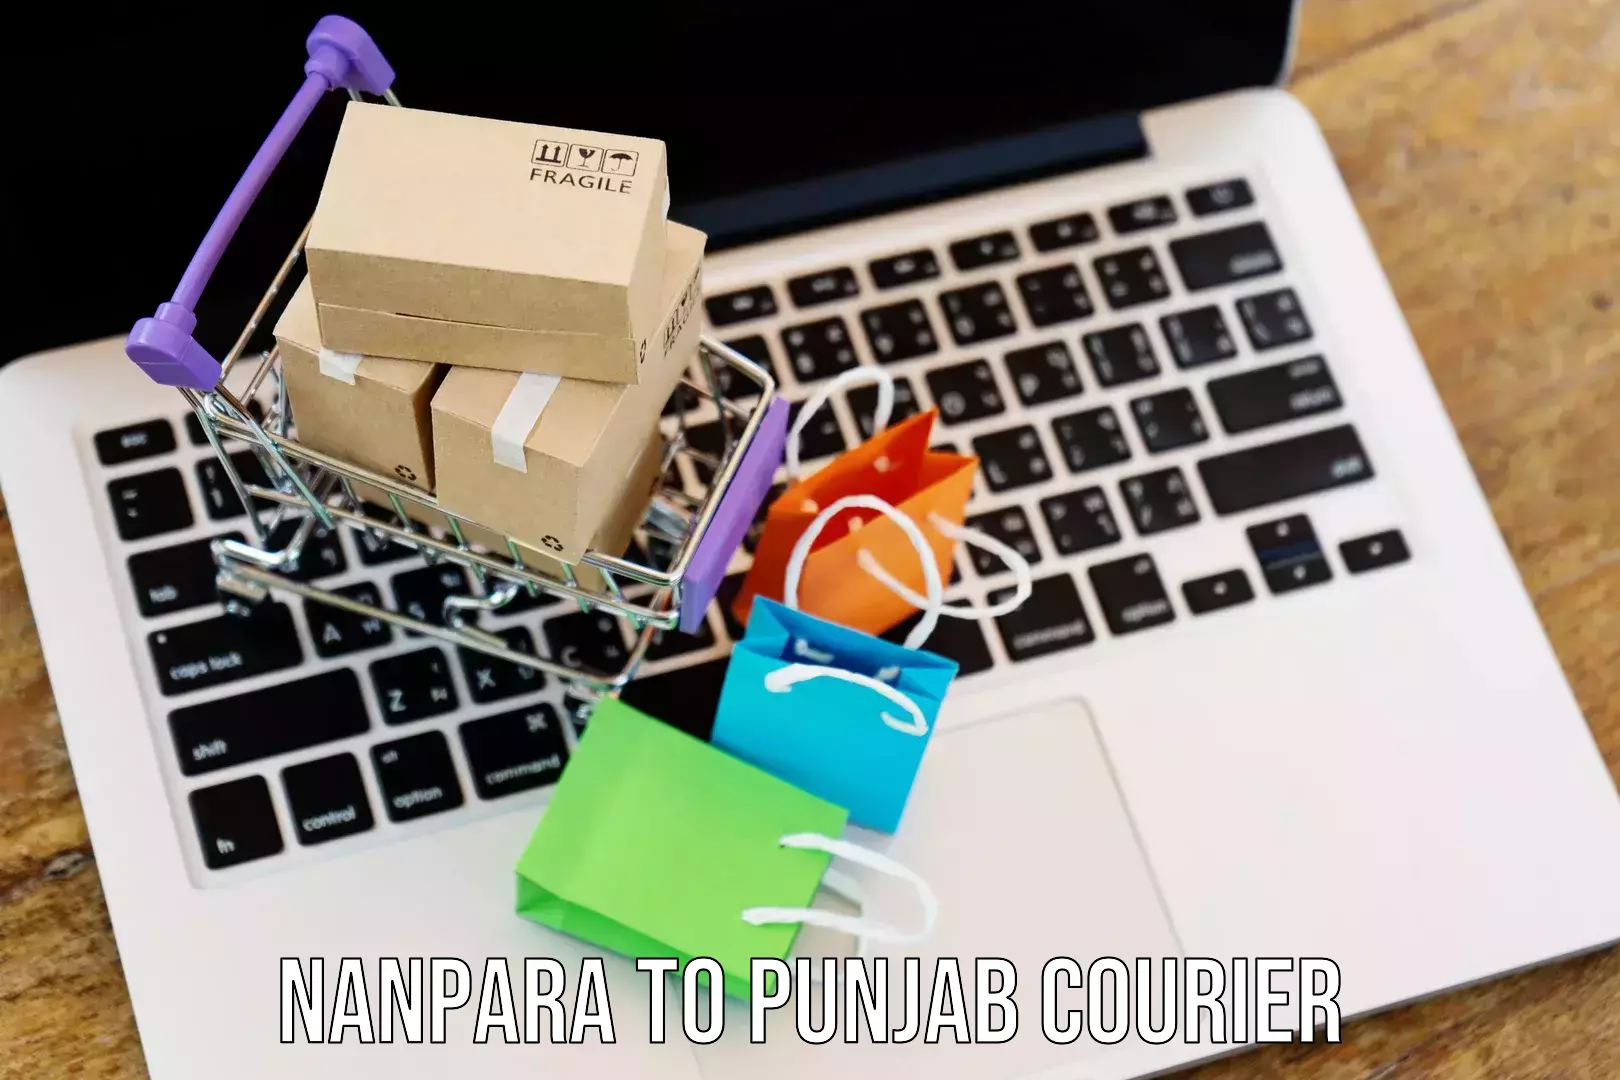 24/7 courier service Nanpara to Dinanagar